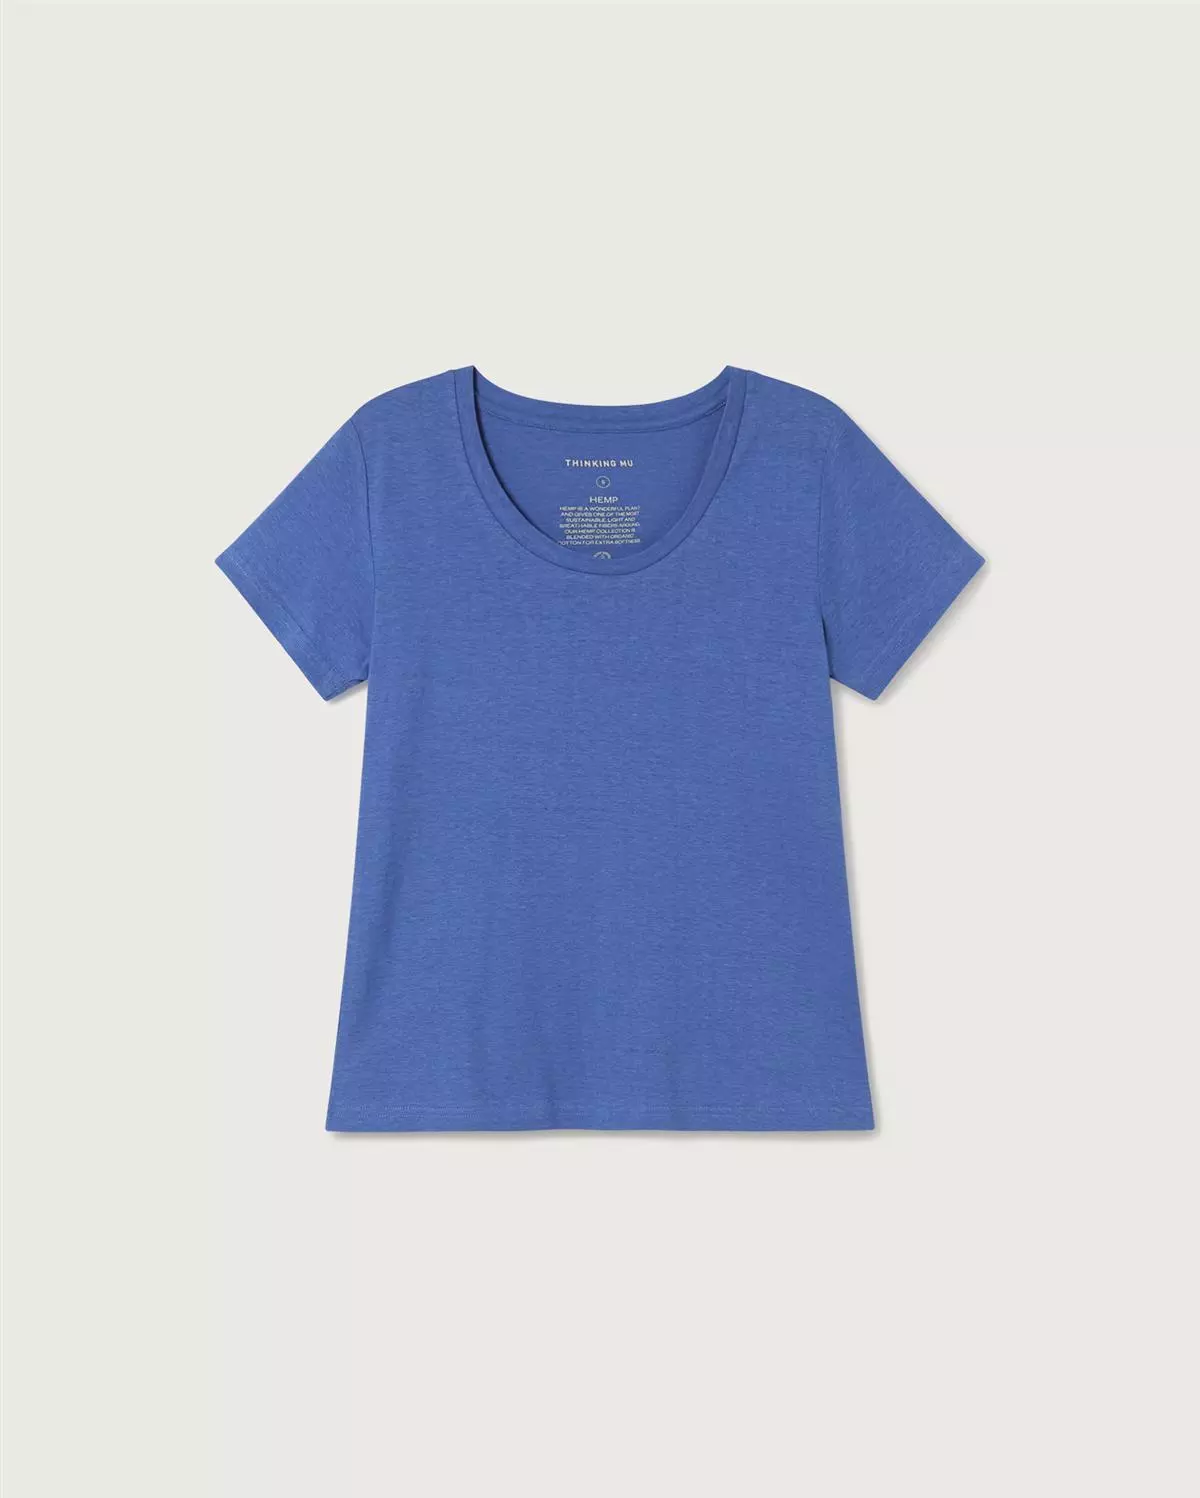 T-Shirt Modell: Hemp Regina